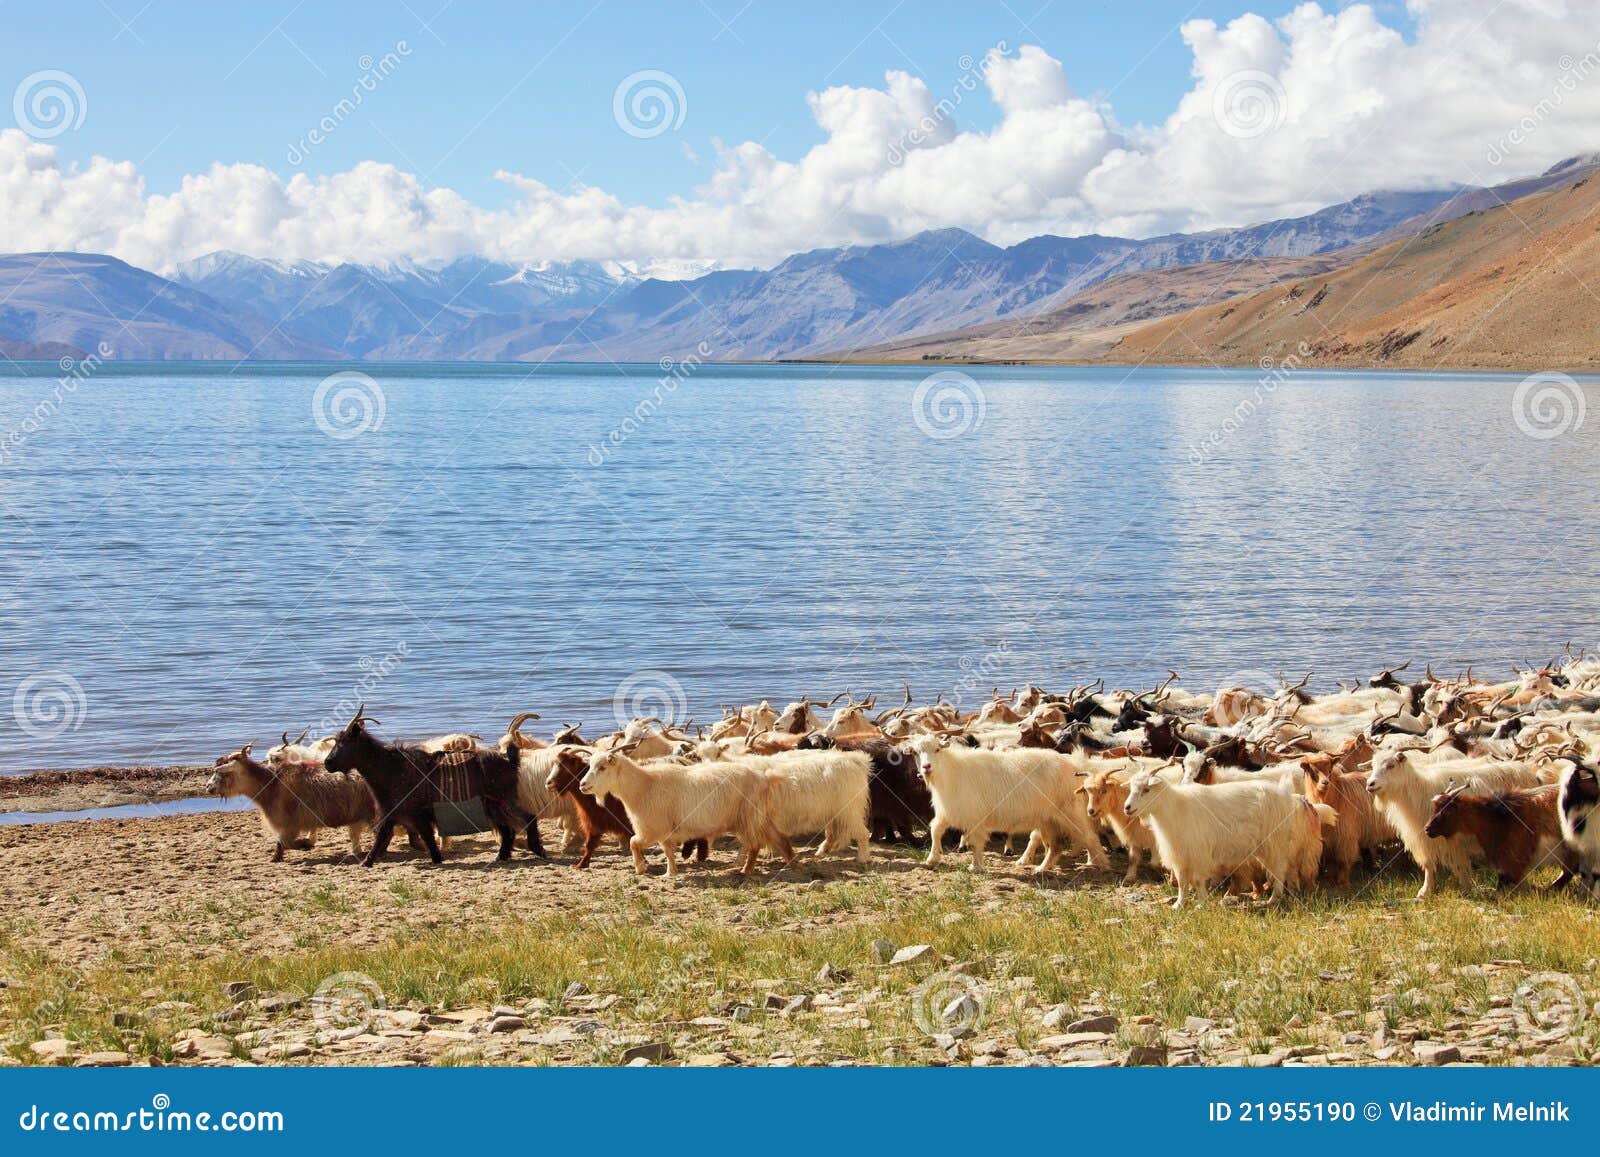 herd of pashmina goats